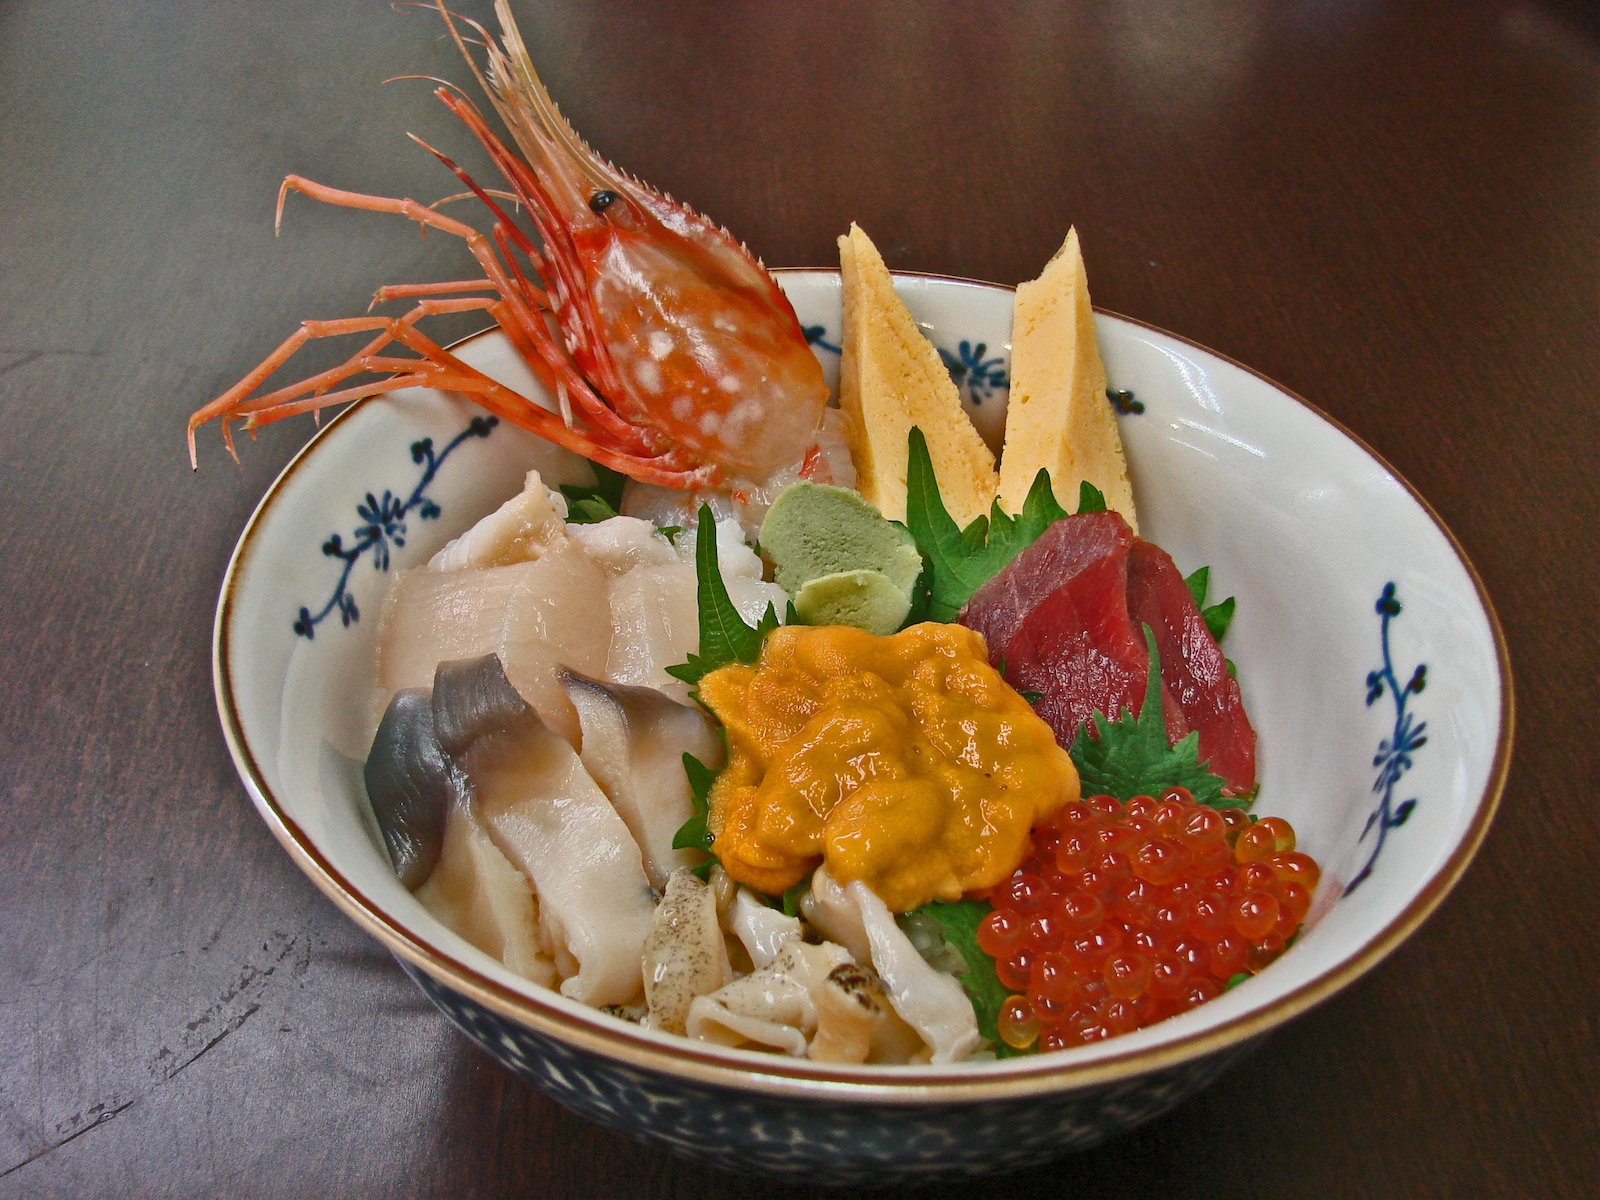 【海鲜小哥金子】【鱼市】北海道帝王蟹还是生的好吃。【小樽】【221101】 - 哔哩哔哩